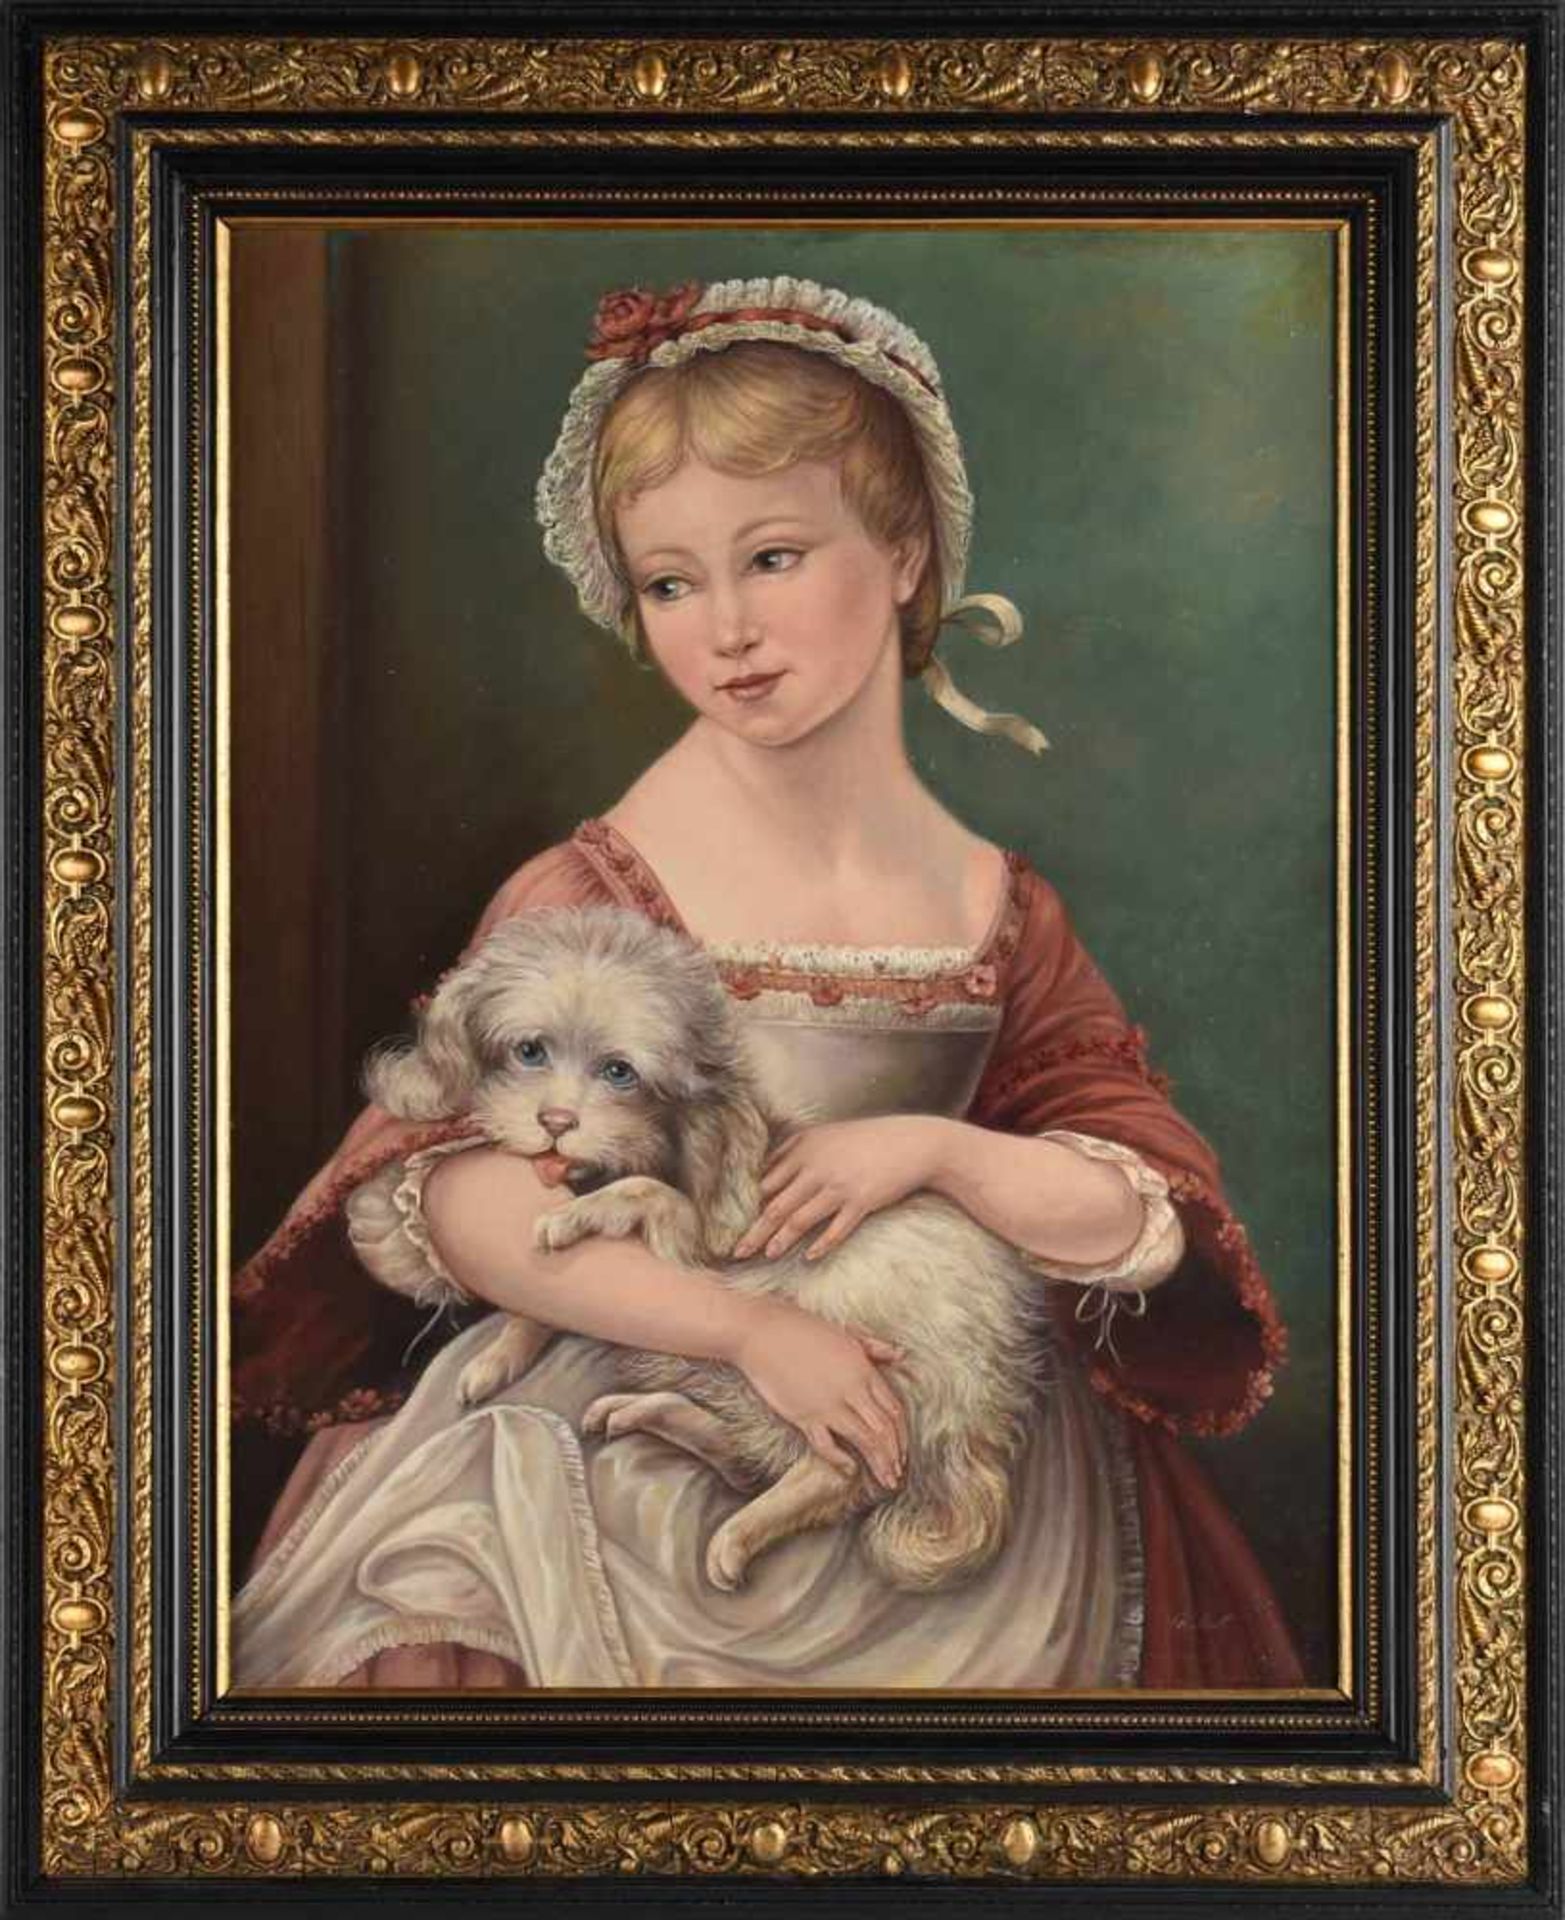 Undeutlich signiert Öl/Lwd., junges Mädchen mit Hund, im Stil des 19. Jhs., gerahmt, ca. 62 x 47 cm, - Bild 3 aus 4